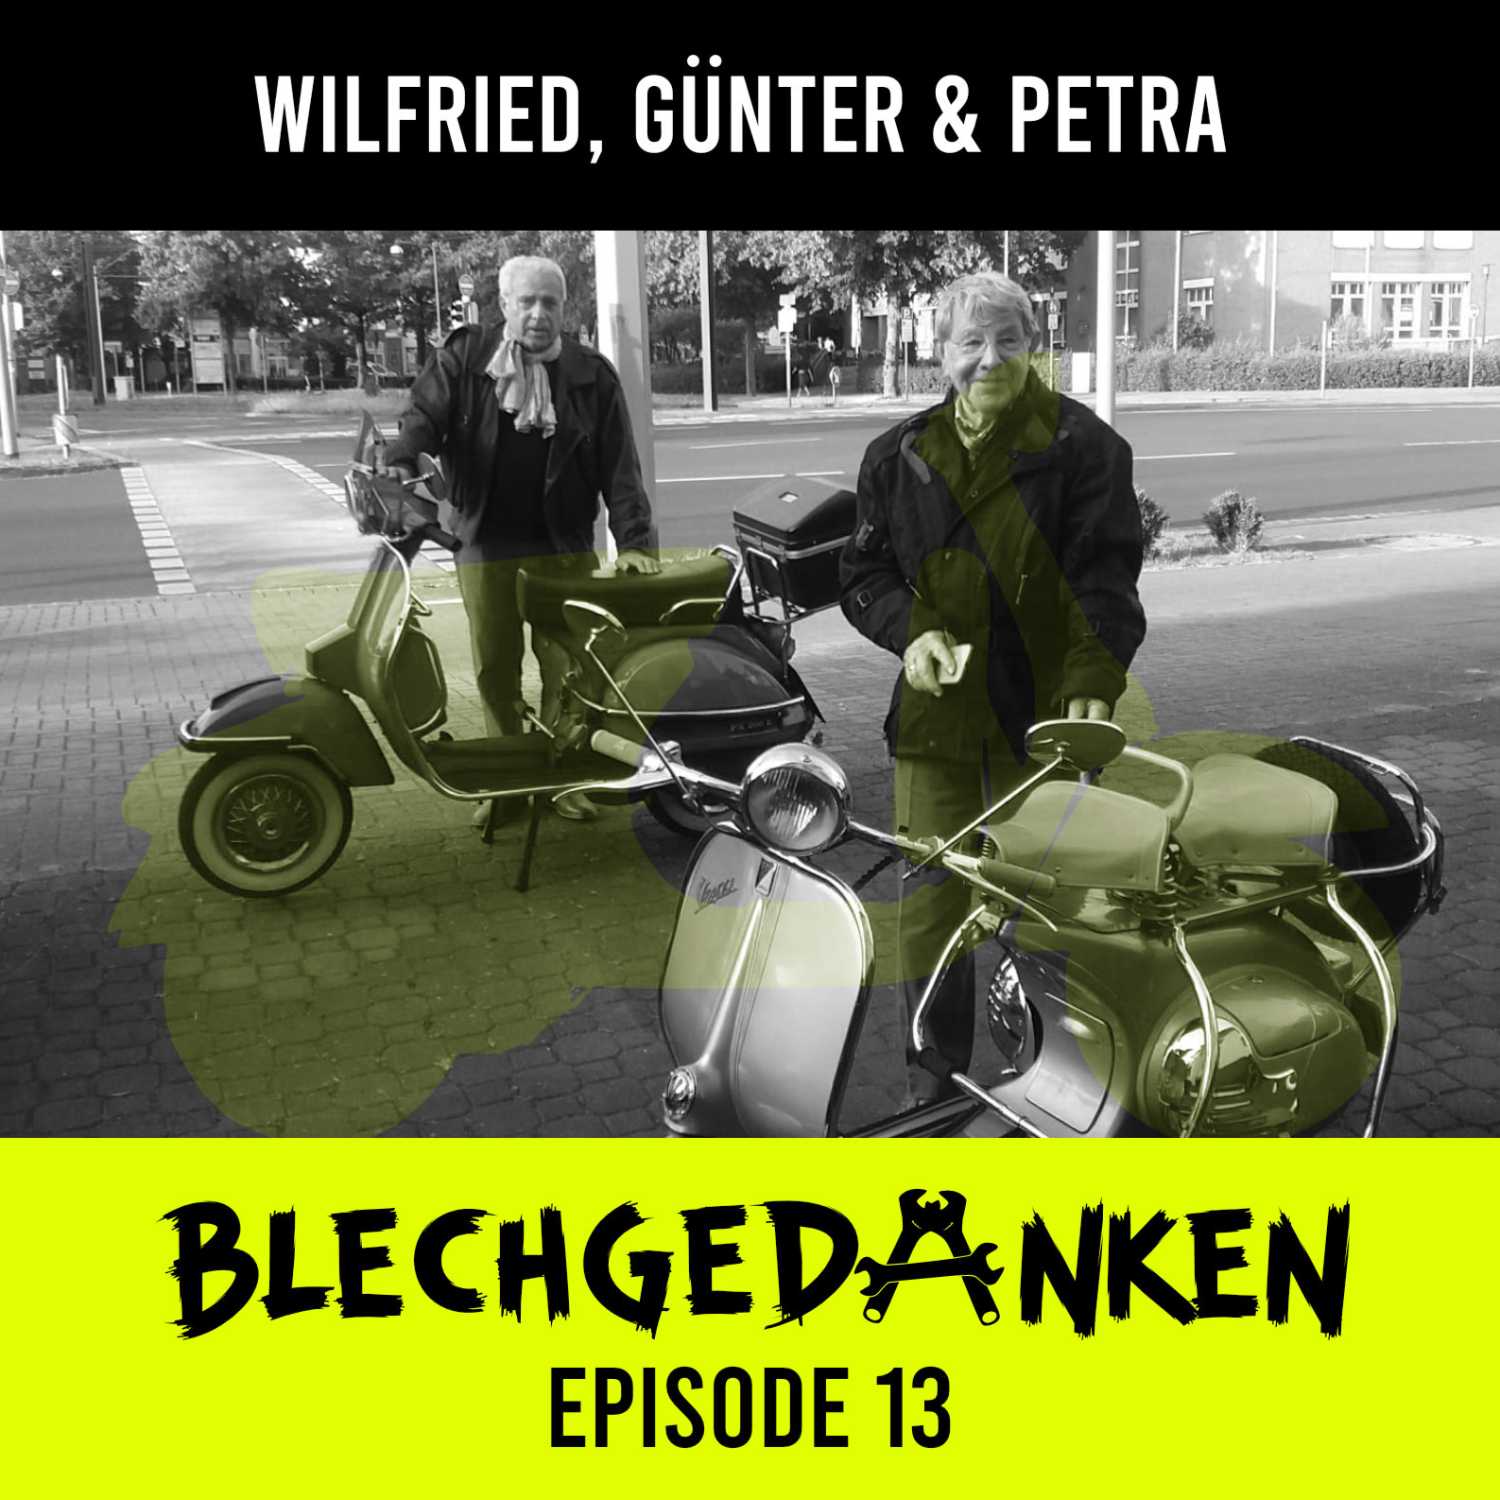 Blechgedanken Episode 13 - Wilfried, Petra und Günter  – Eine Königin mit Rädern unten dran – der Traum und seine Verwirklichung!